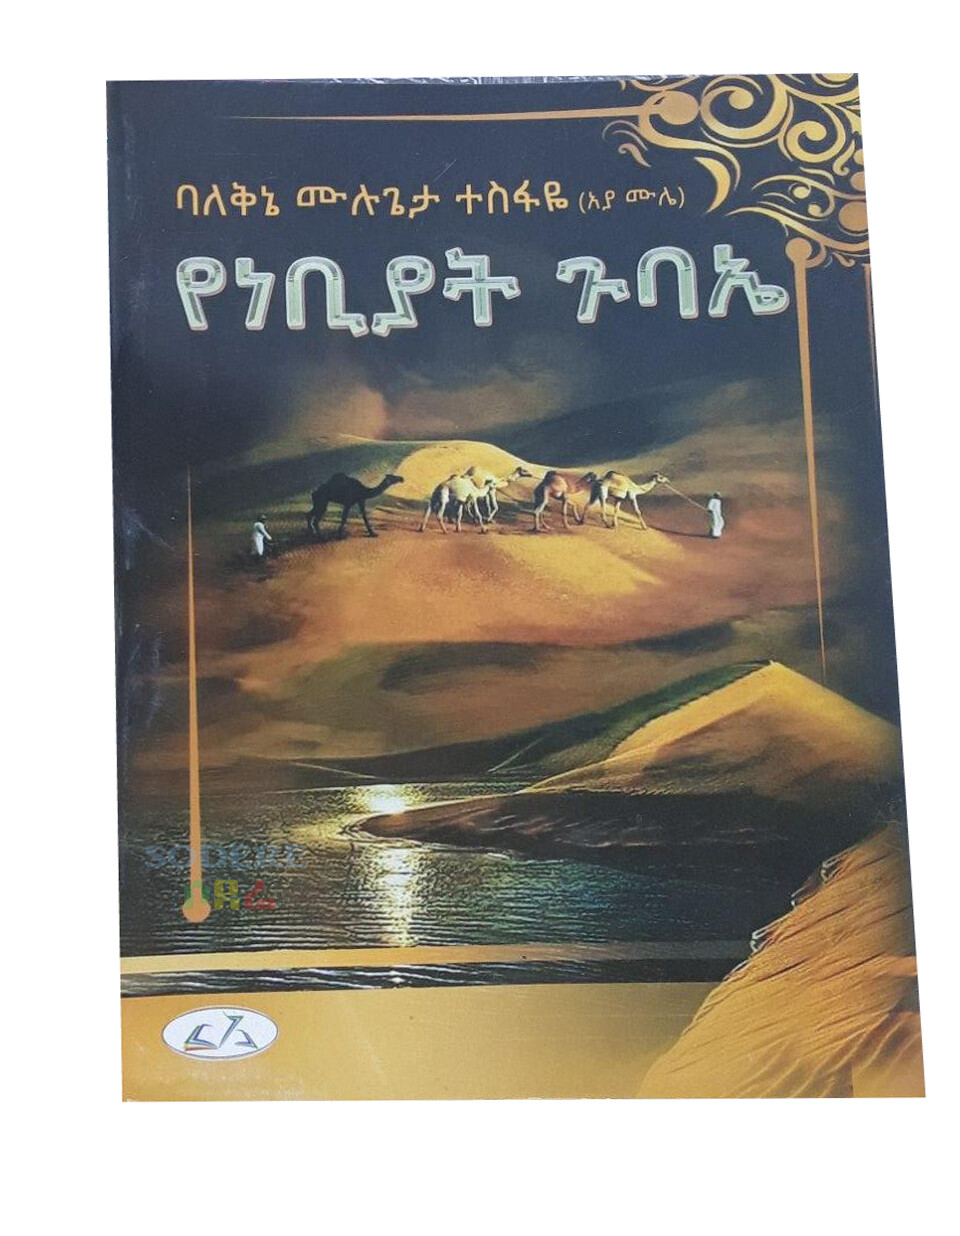 የነብያት ጉባኤ Yenebiyat Gubae By Mulugeta Tesfaye